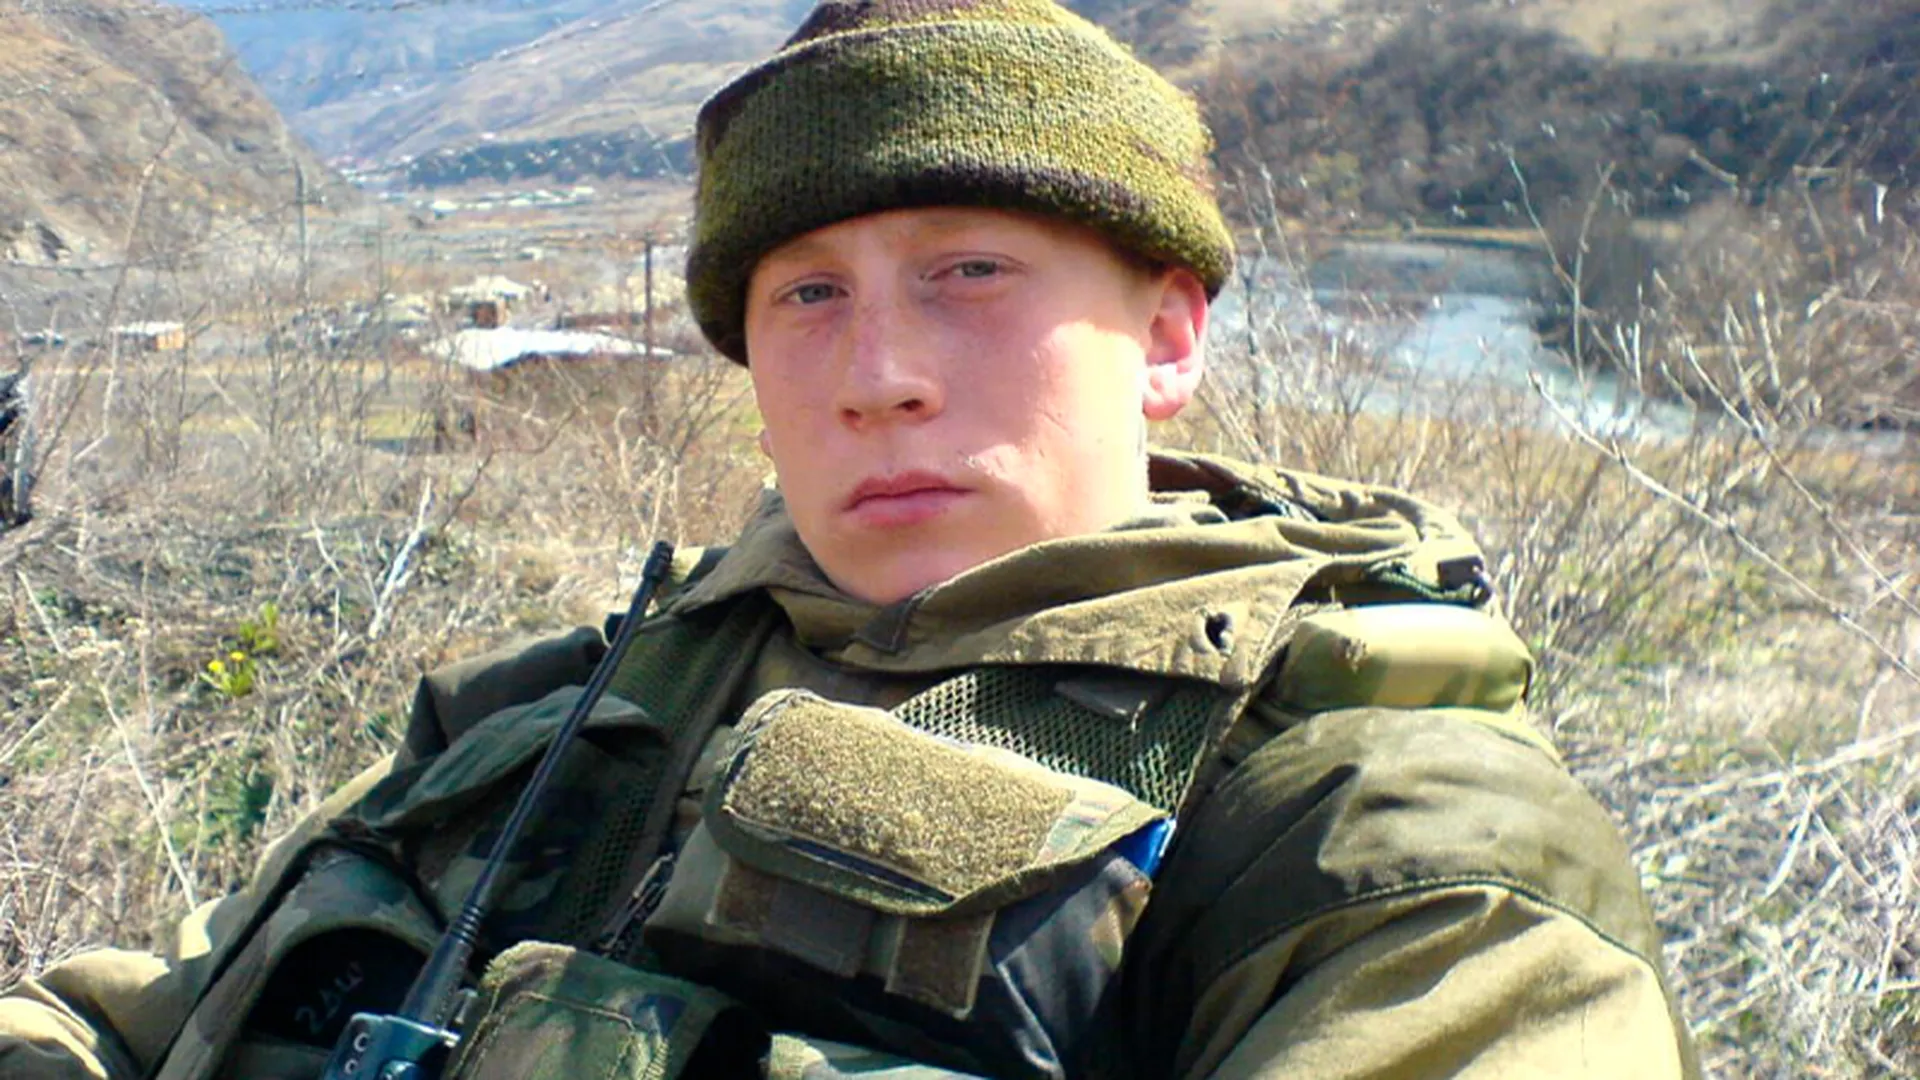 Удерживал позицию в одиночку до последнего патрона: в Щелкове похоронили бойца ЧВК «Вагнер»